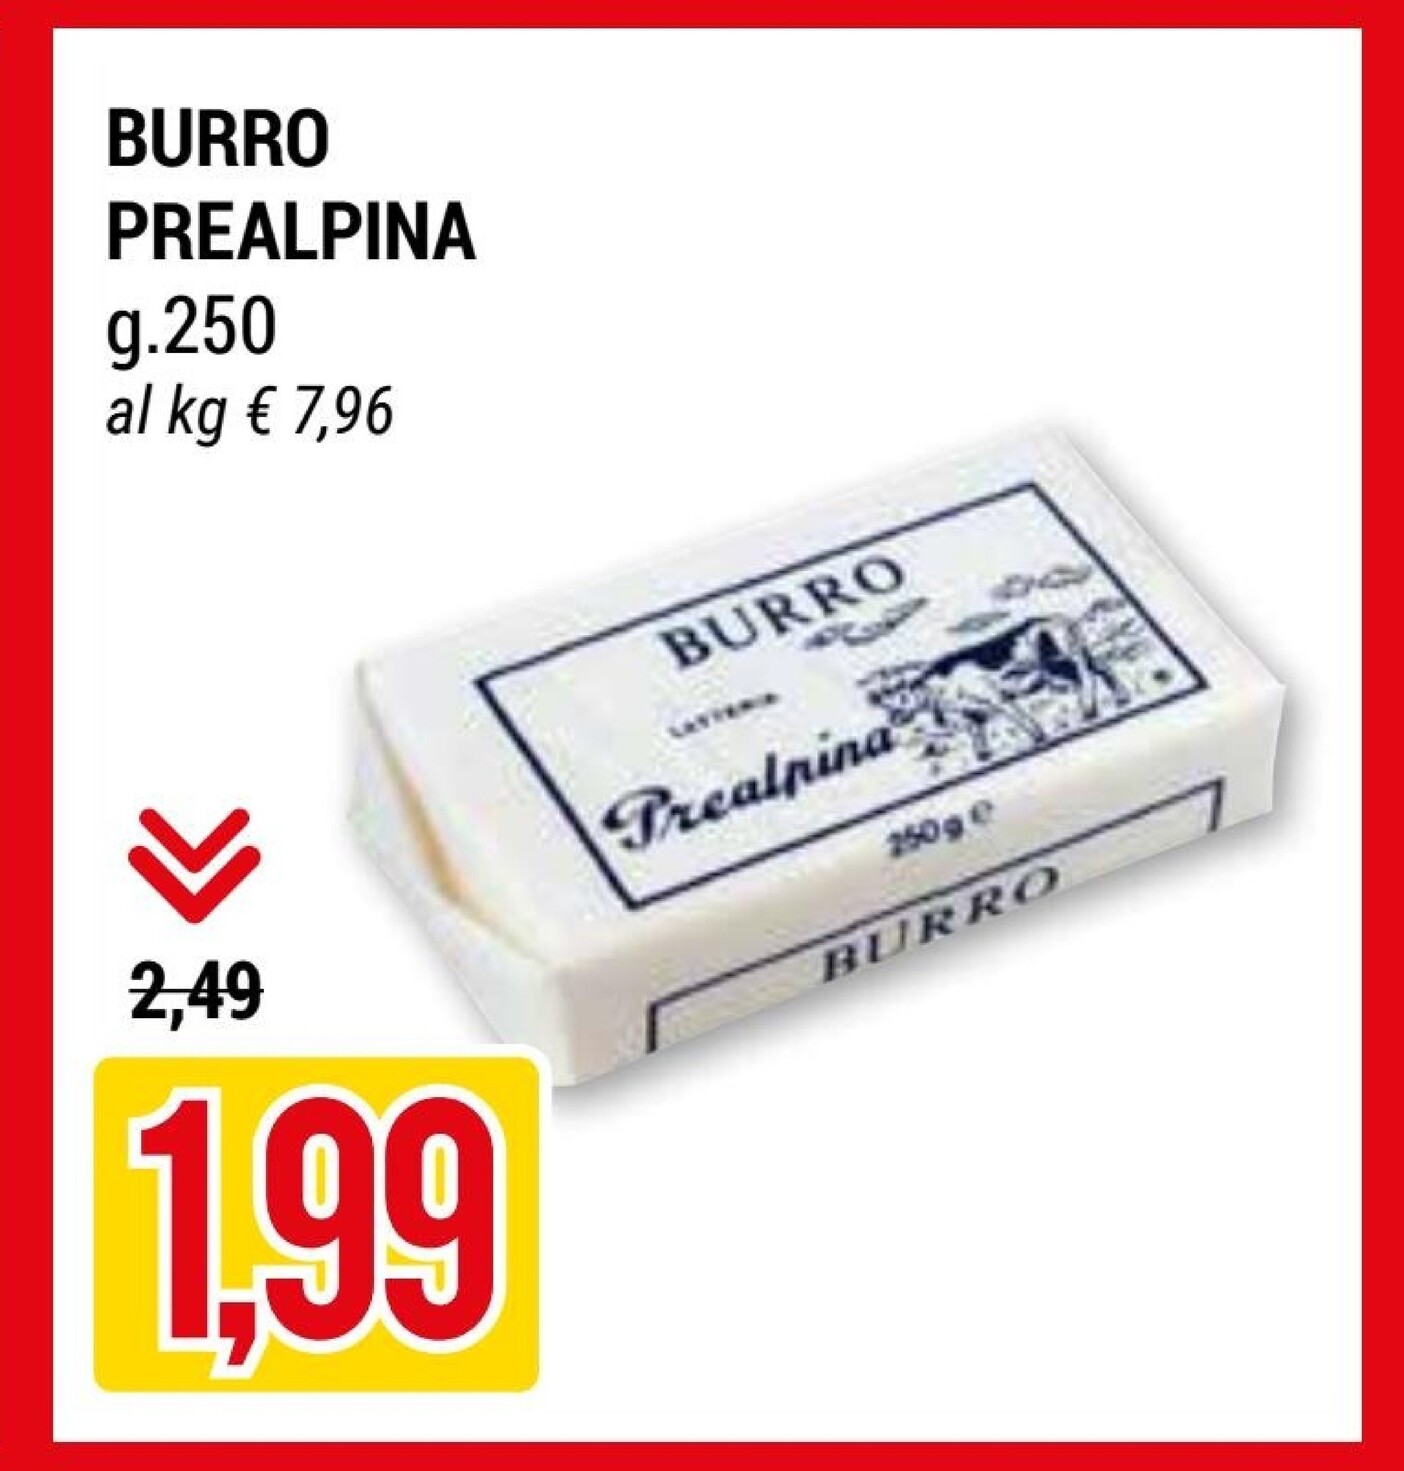 Offerta per Burro Prealpina a 1,99€ in Hardis